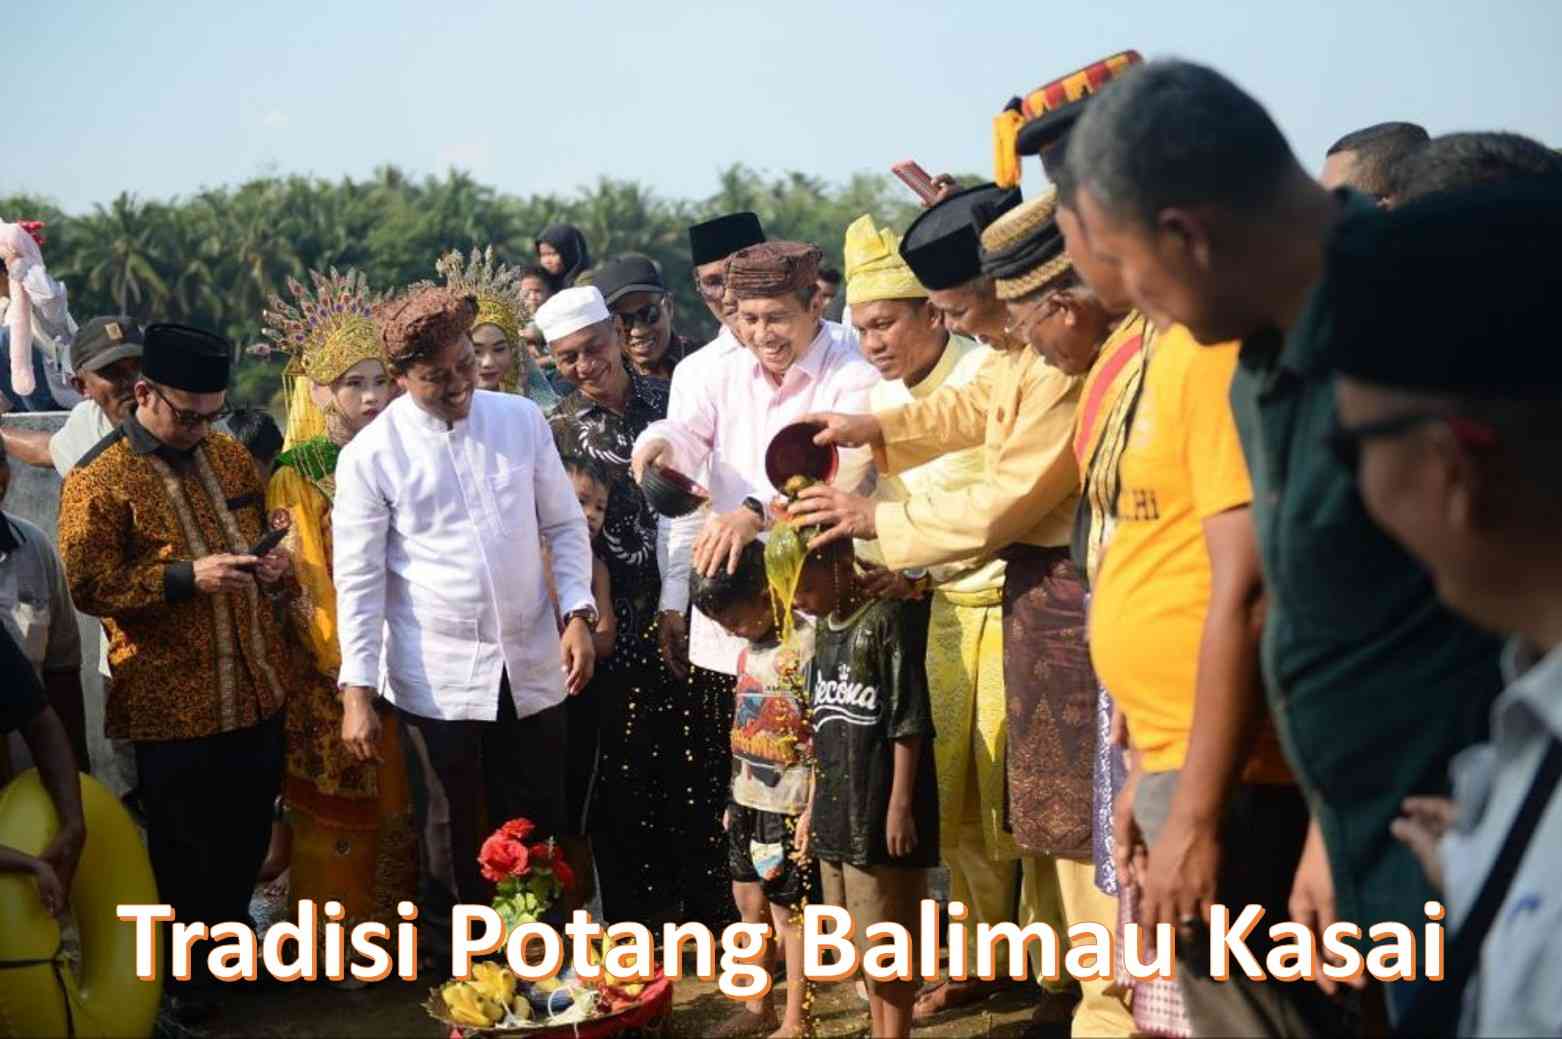 Tradisi Potang Balimau Kasai Menyambut Ramadhan pada Masyarakat Melayu Riau